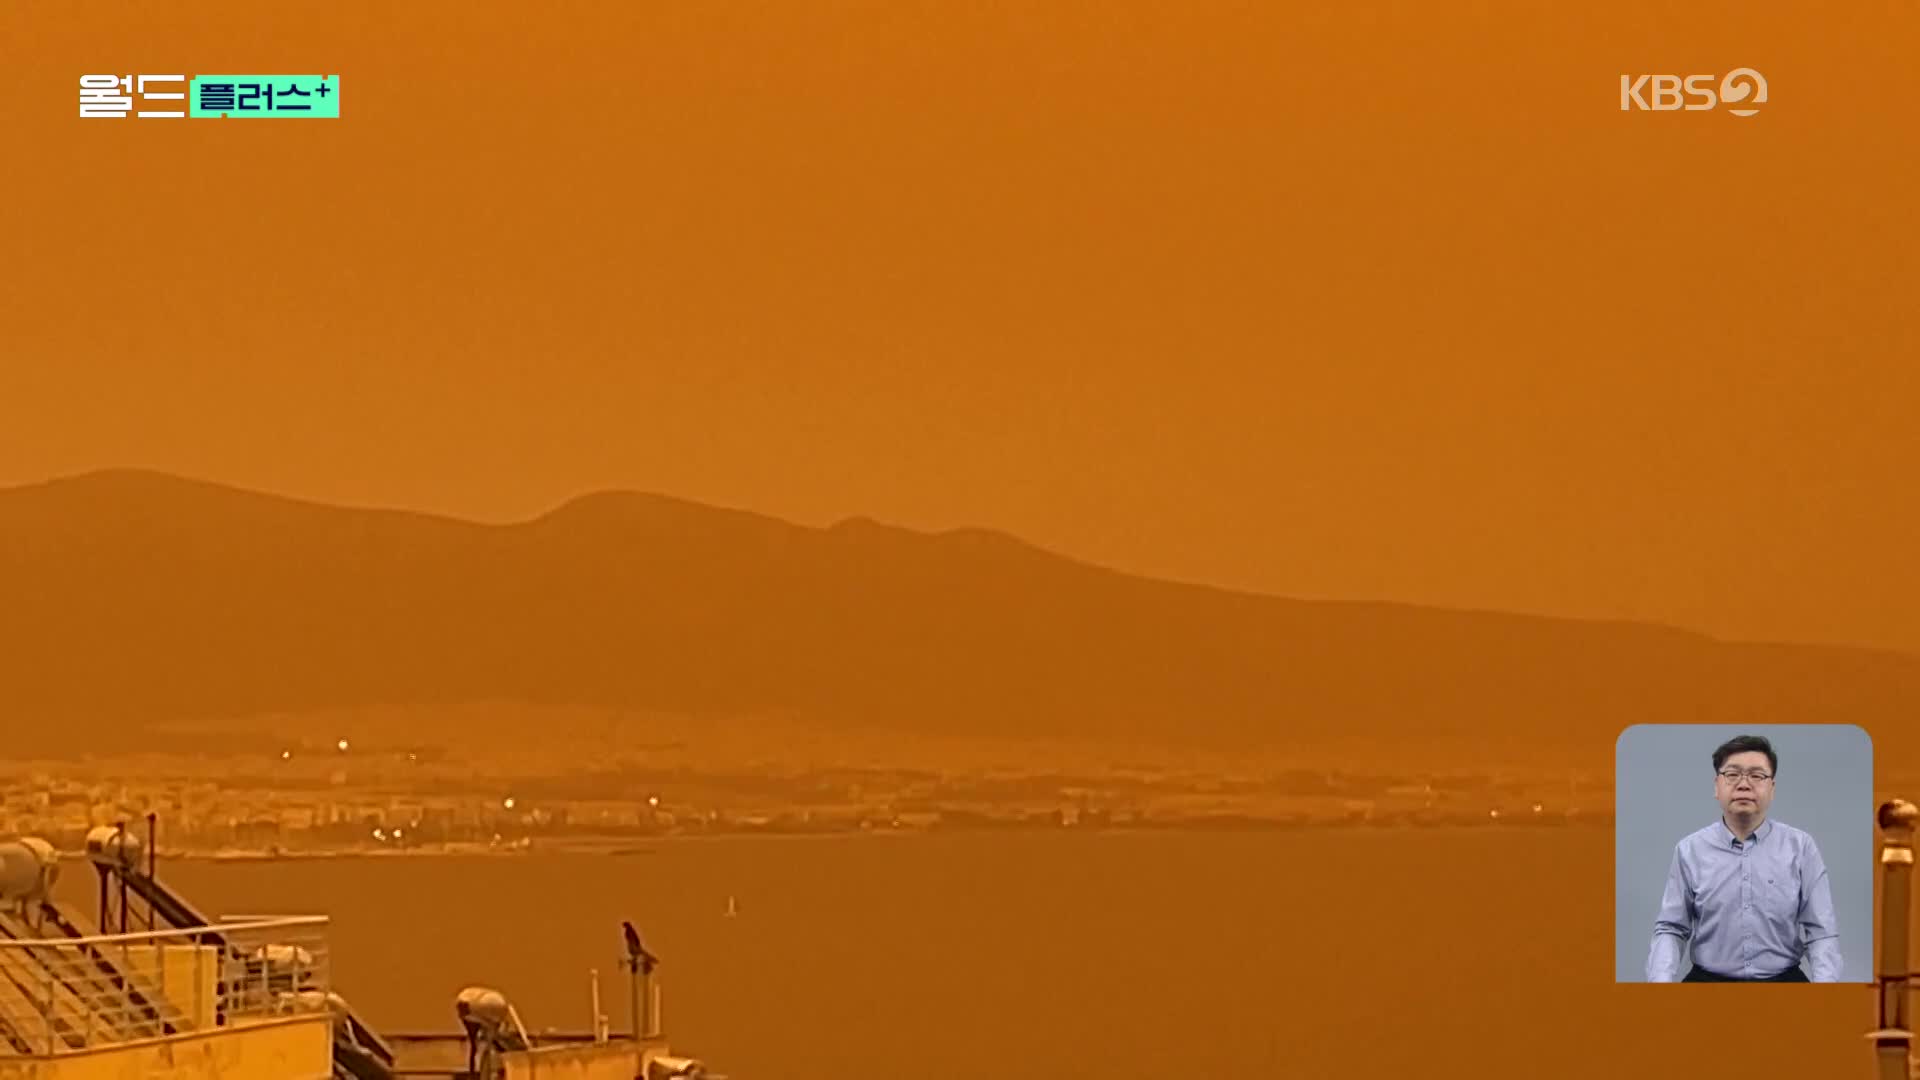 [월드 플러스] ‘영화 장면인줄’…모래먼지로 붉게 변한 아테네